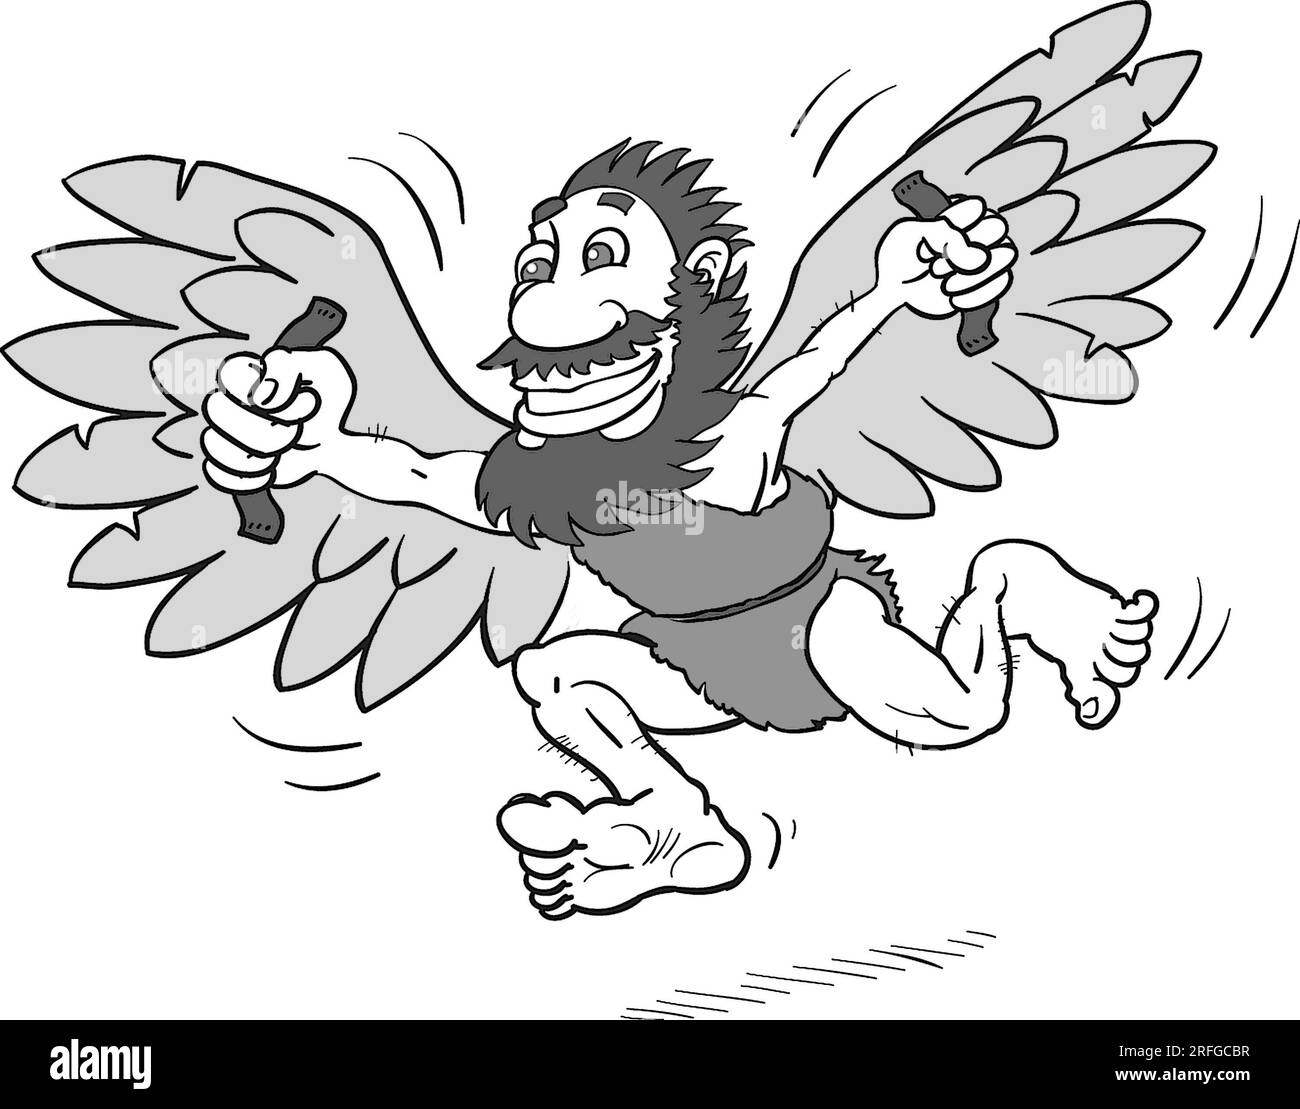 Art noir et blanc illustrant le mythe d'Icare, ici avec des ailes de plumes d'oiseau, idiome volant trop près du Soleil, preneur de risque, fierté vient avant une chute. Banque D'Images